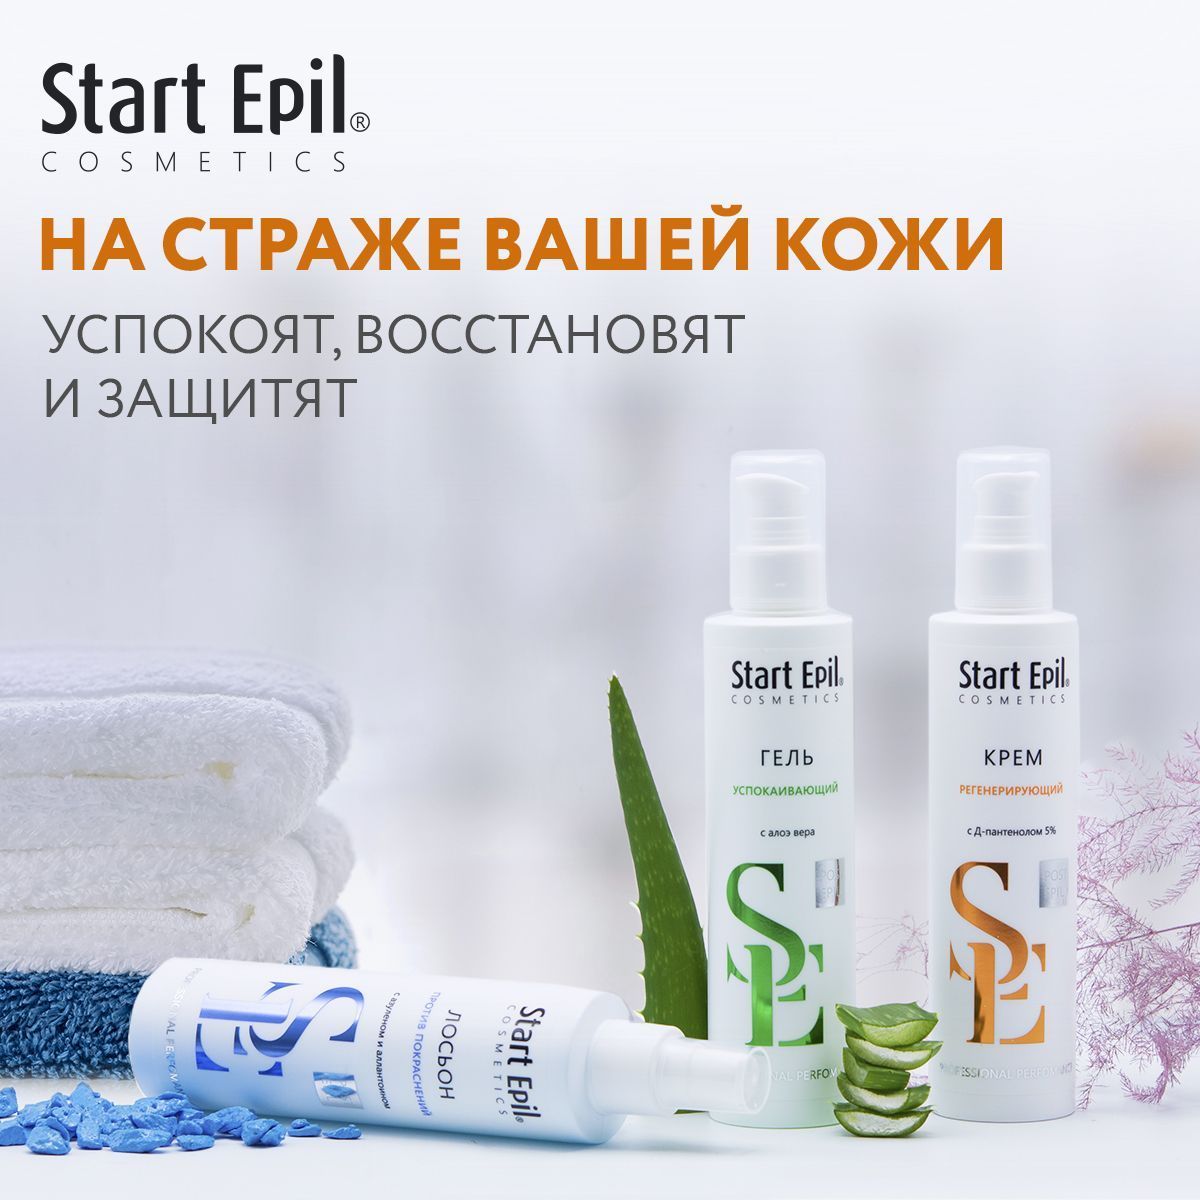 3 новинки Start Epil для восстановления и защиты кожи